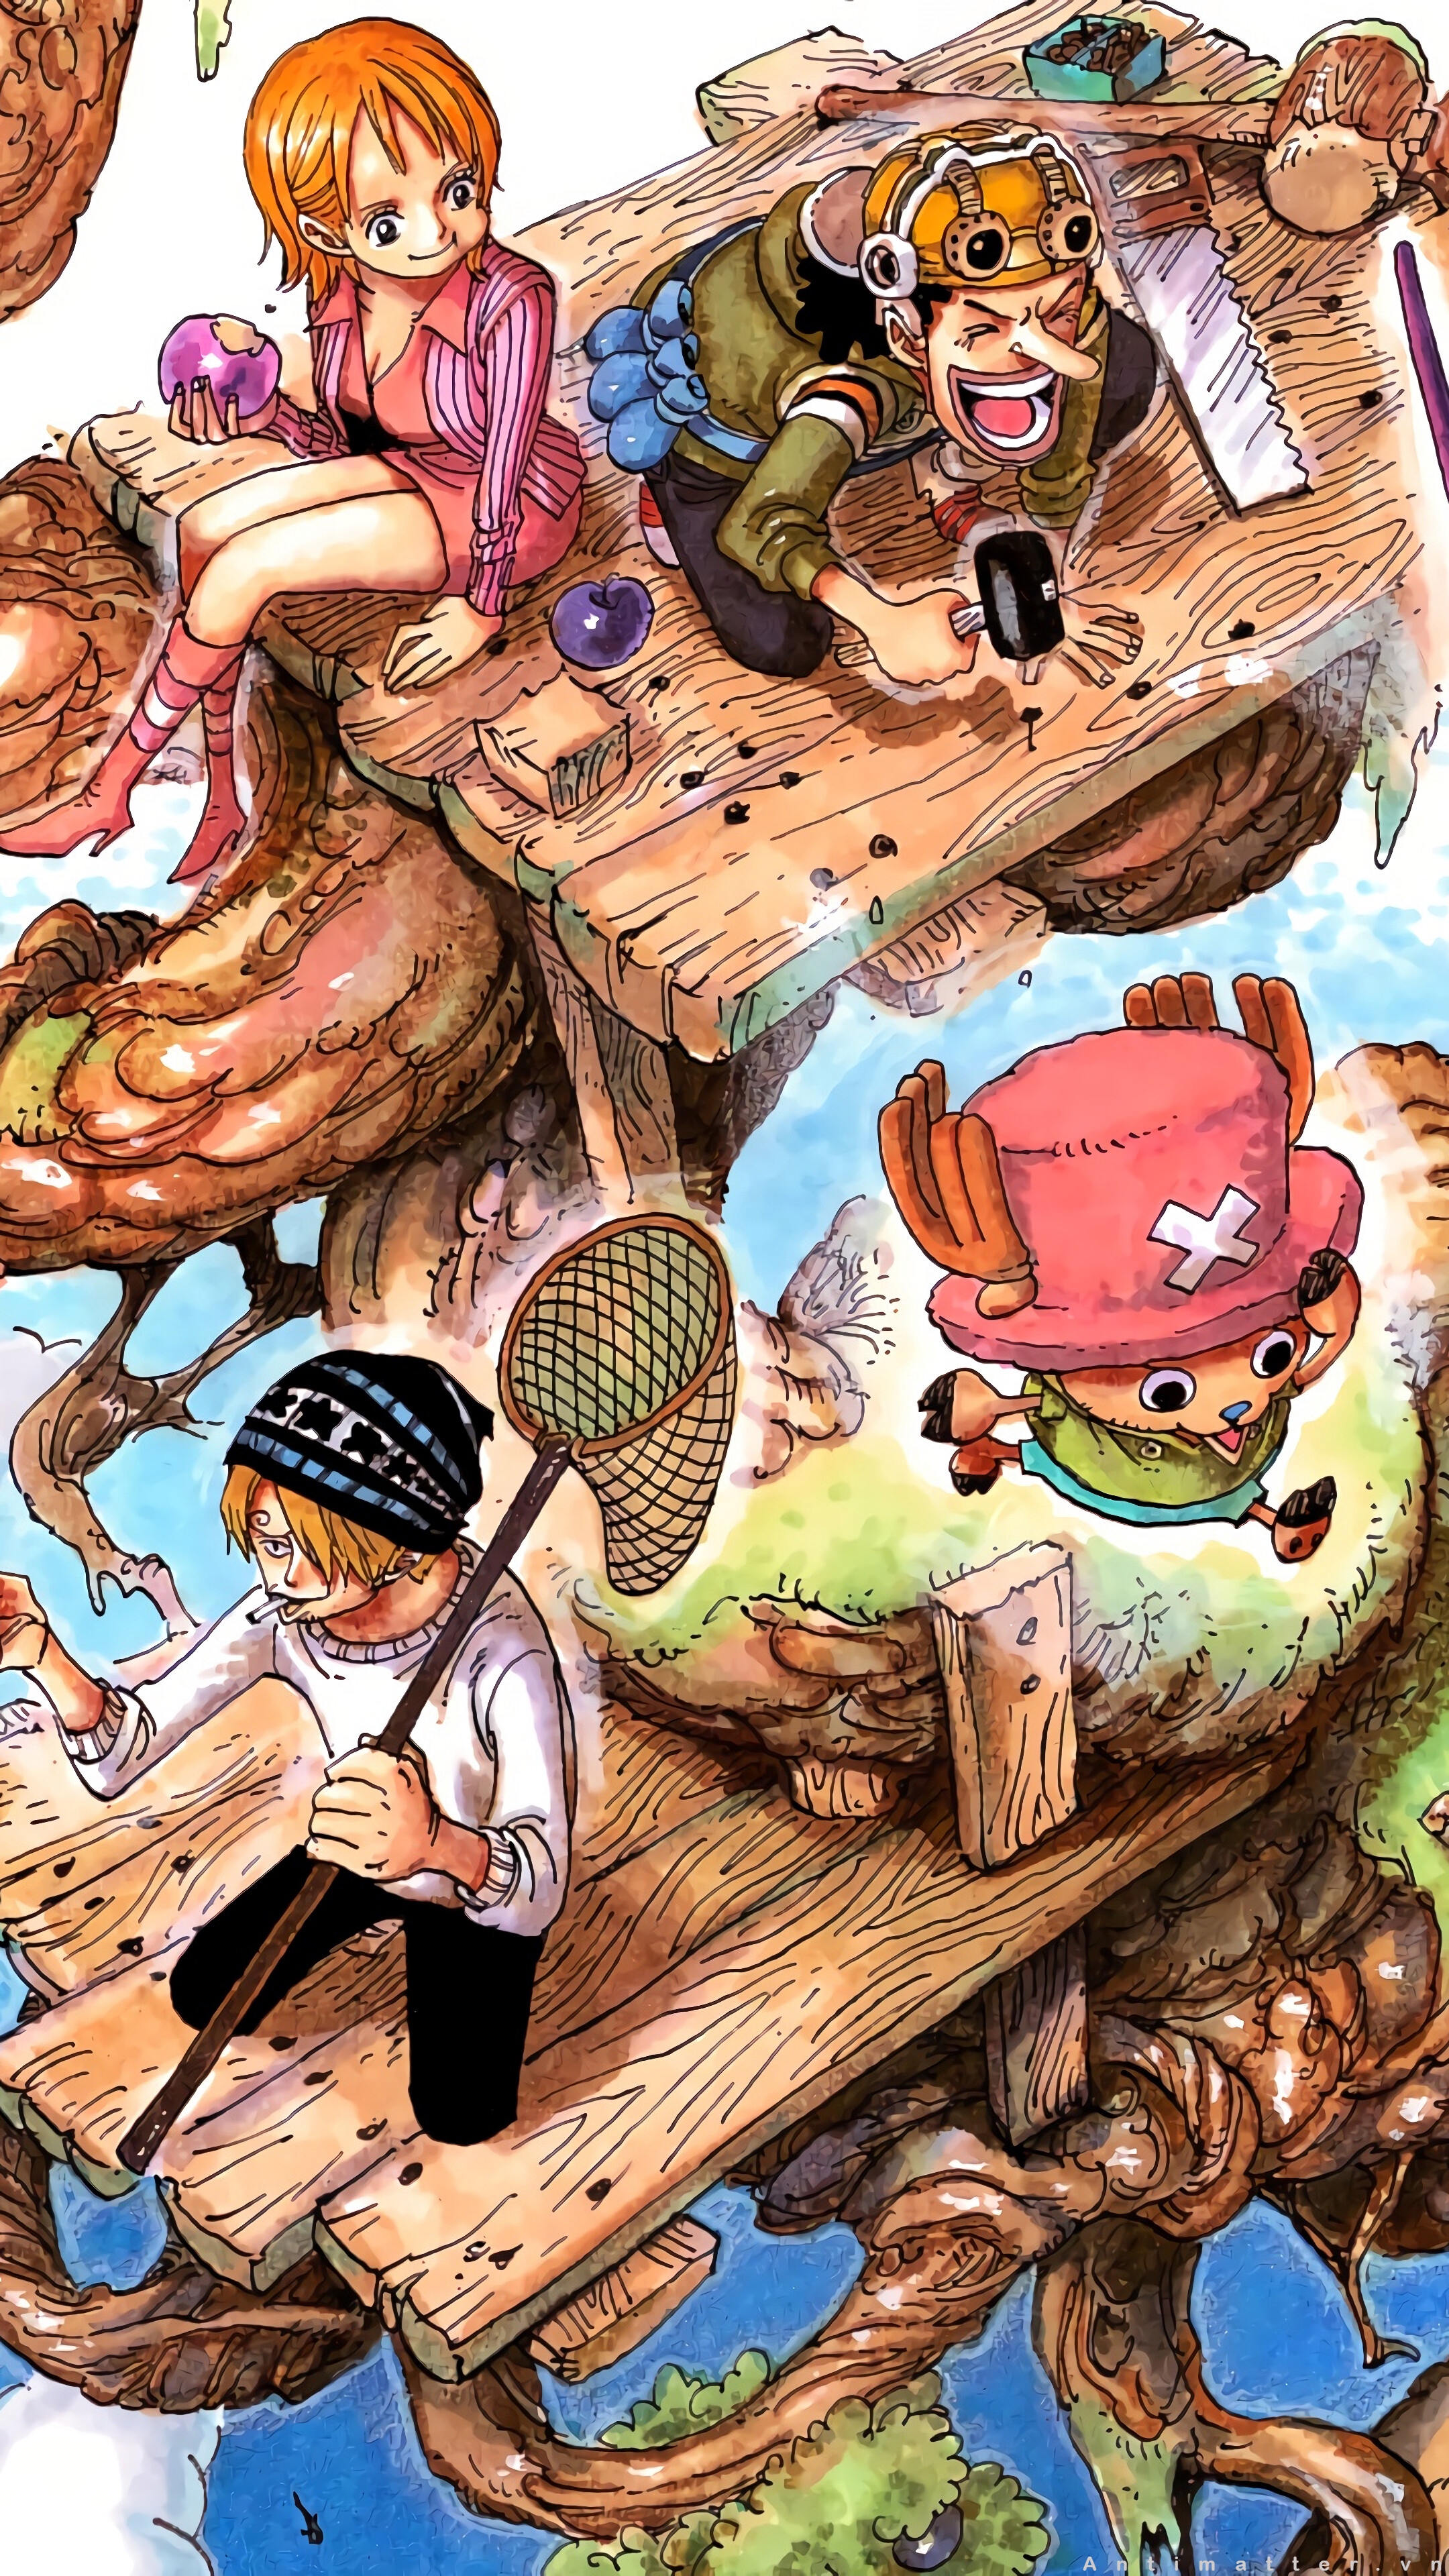 Hình Nền One Piece 4K Đẹp cho Điện Thoại và Máy Tính